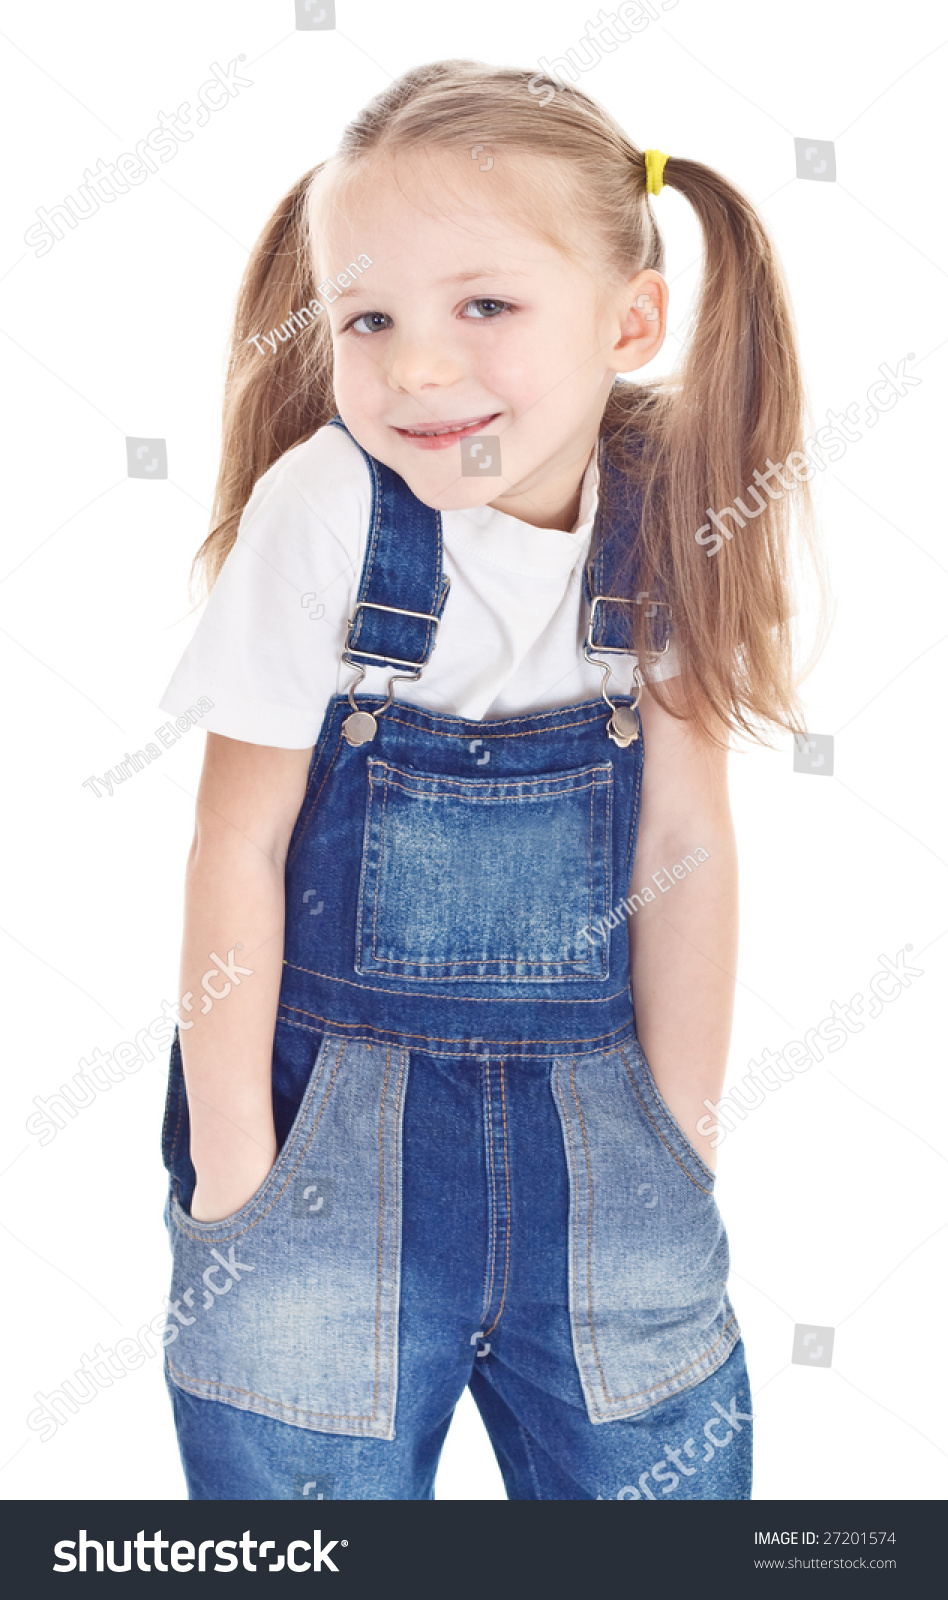 little girl jean overalls